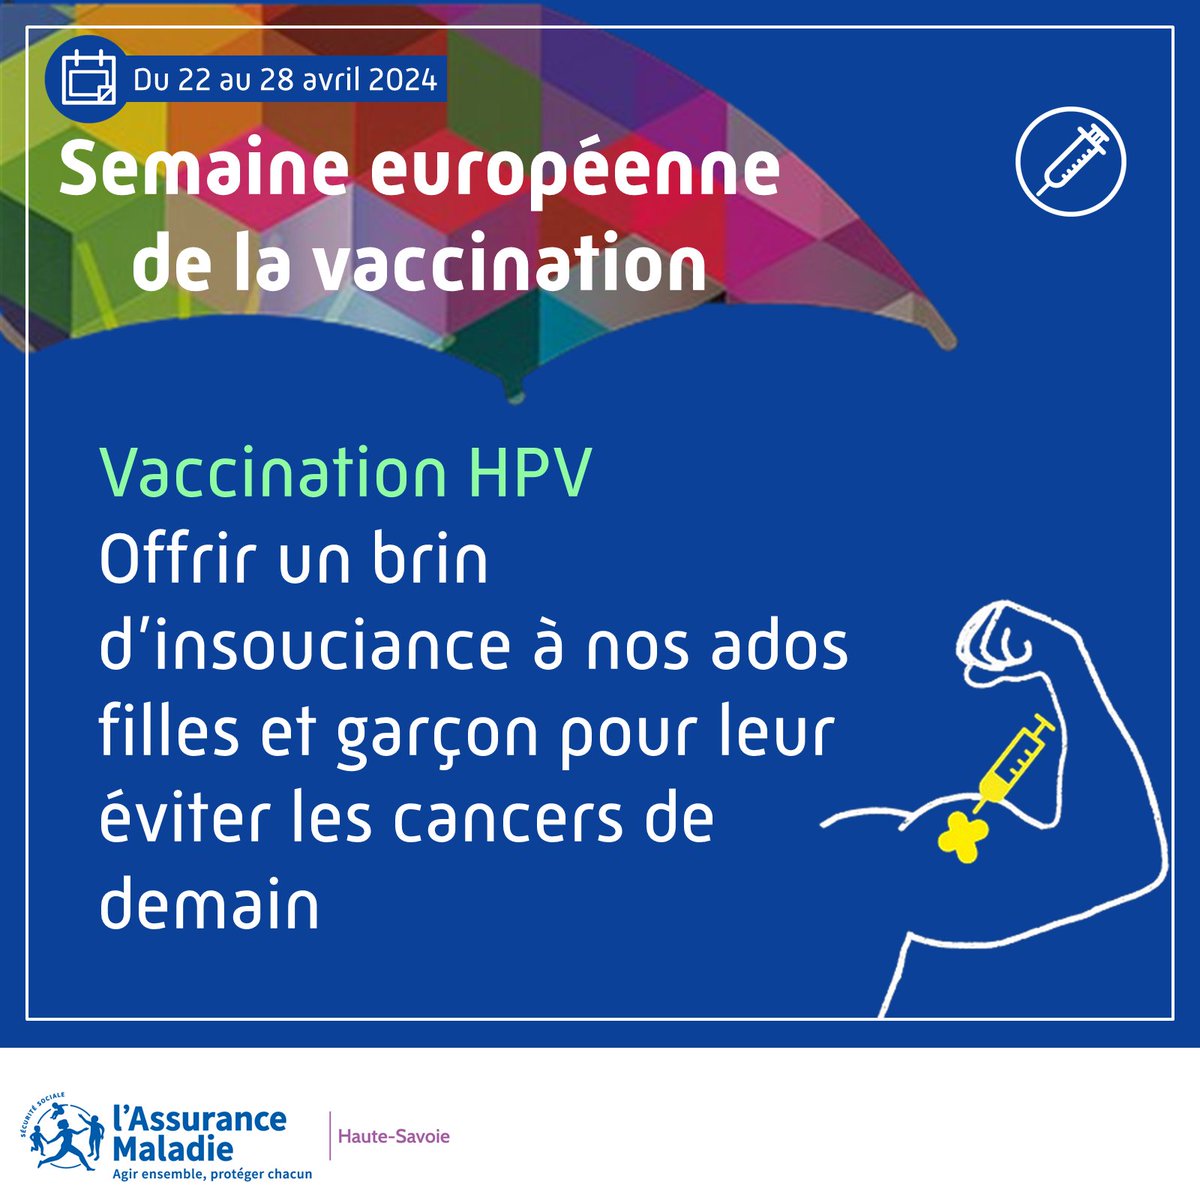 #SEV2024💉 Pour éviter les cancers🦀#HPV de demain, vaccinez vos jeunes filles/garçons dès 11 ans et jusqu’à 19 ans Efficacité proche de 100% dès qu’elle est pratiquée avant le début de leur vie sexuelle. 🔗urlz.fr/lzFk #VaccinHPV #papillomavirus @Assur_Maladie